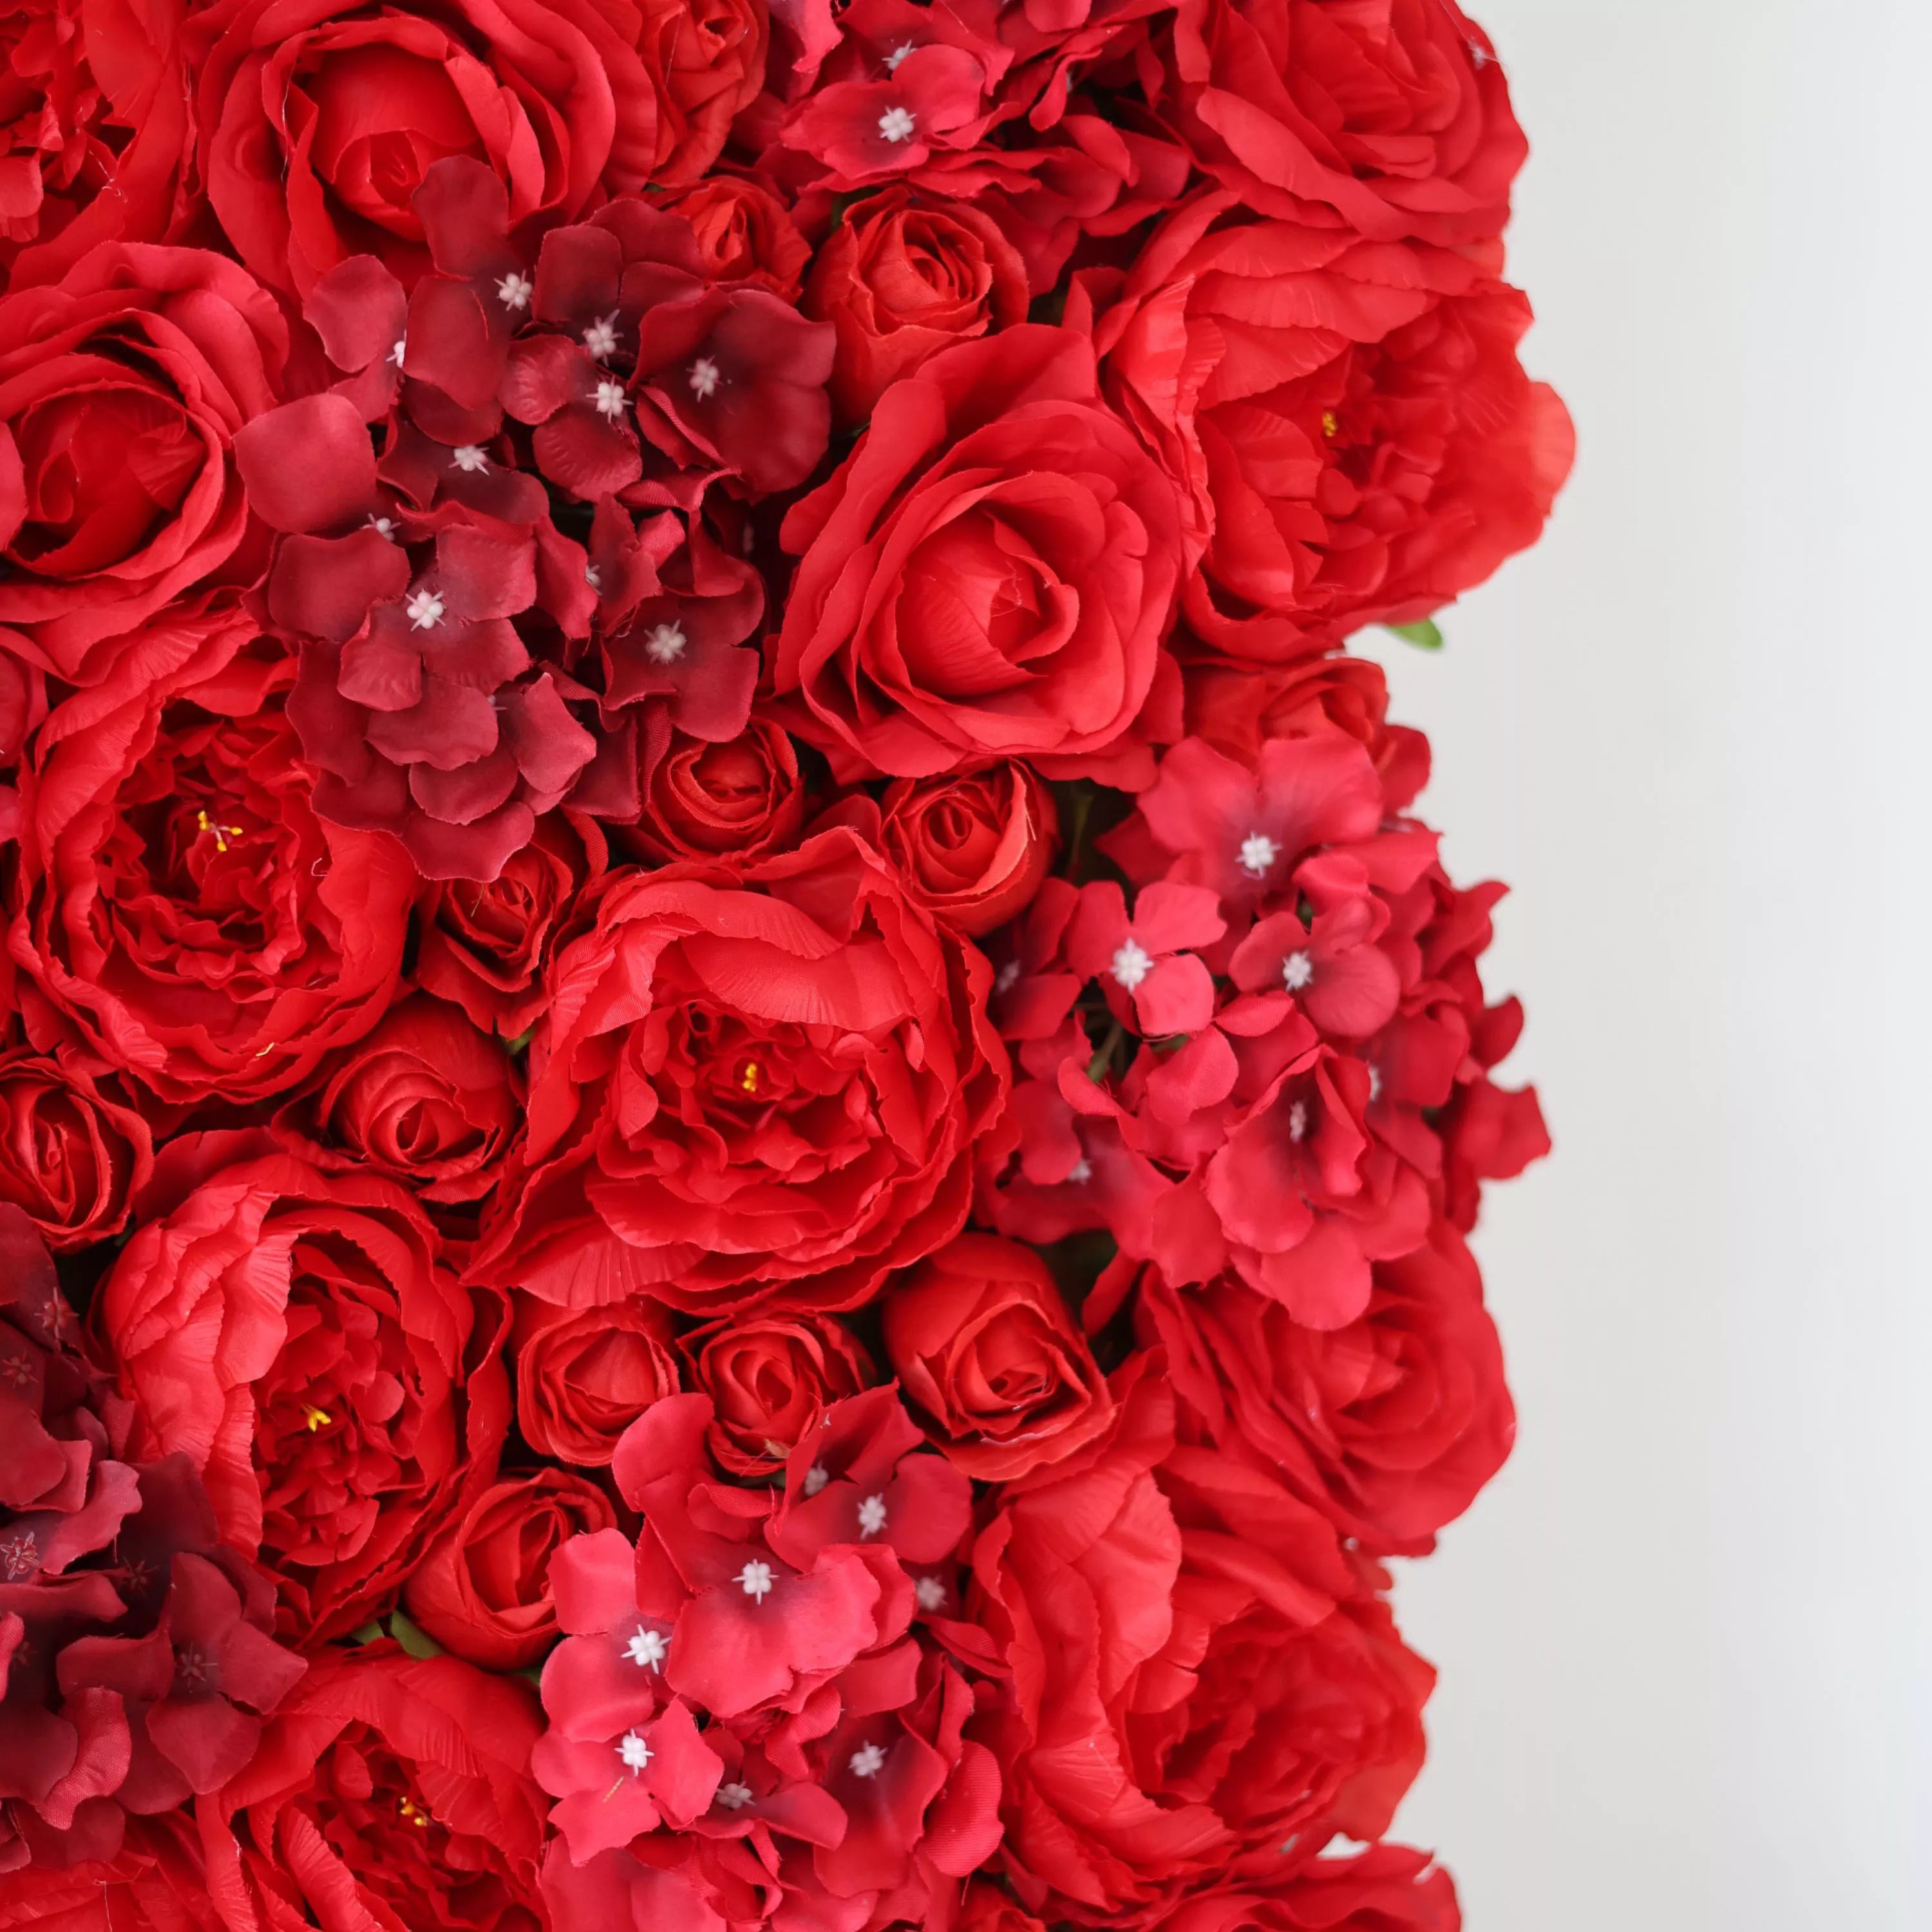 زهرة فالار زهرة اصطناعية حمراء زهرة خلفية جدار الزفاف ، ديكور حفلات زهور ، حدث لفة حتى